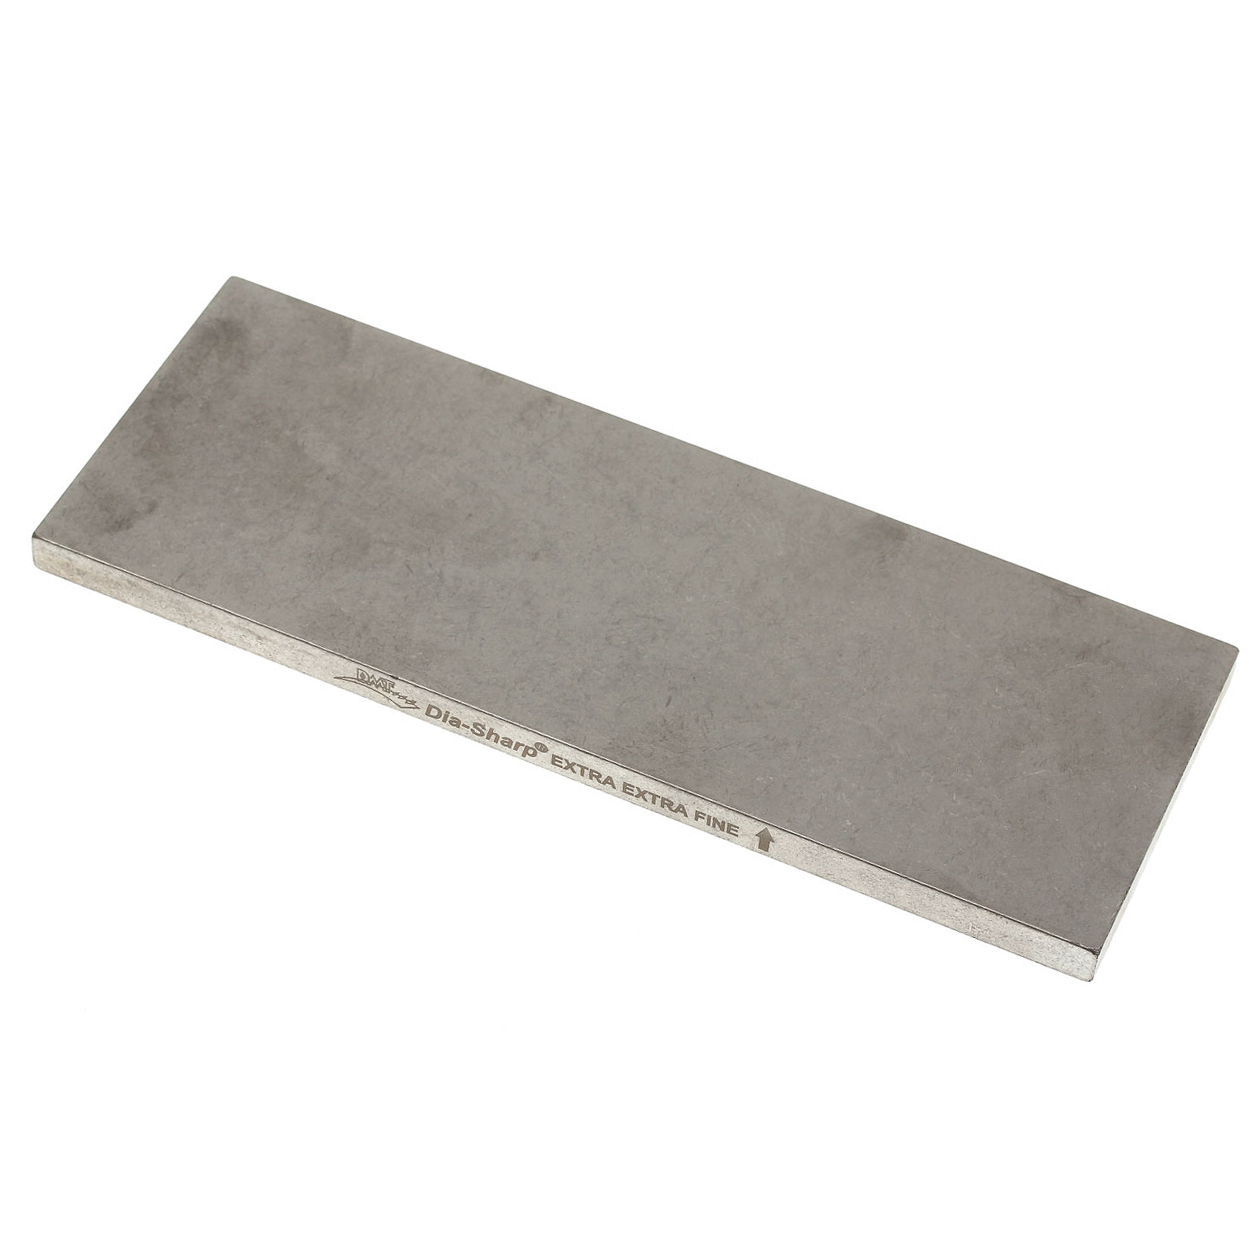 Алмазный брусок для заточки  DMT® Extra-Extra Fine, 8000 меш (3 мкм), с резиновыми ножками